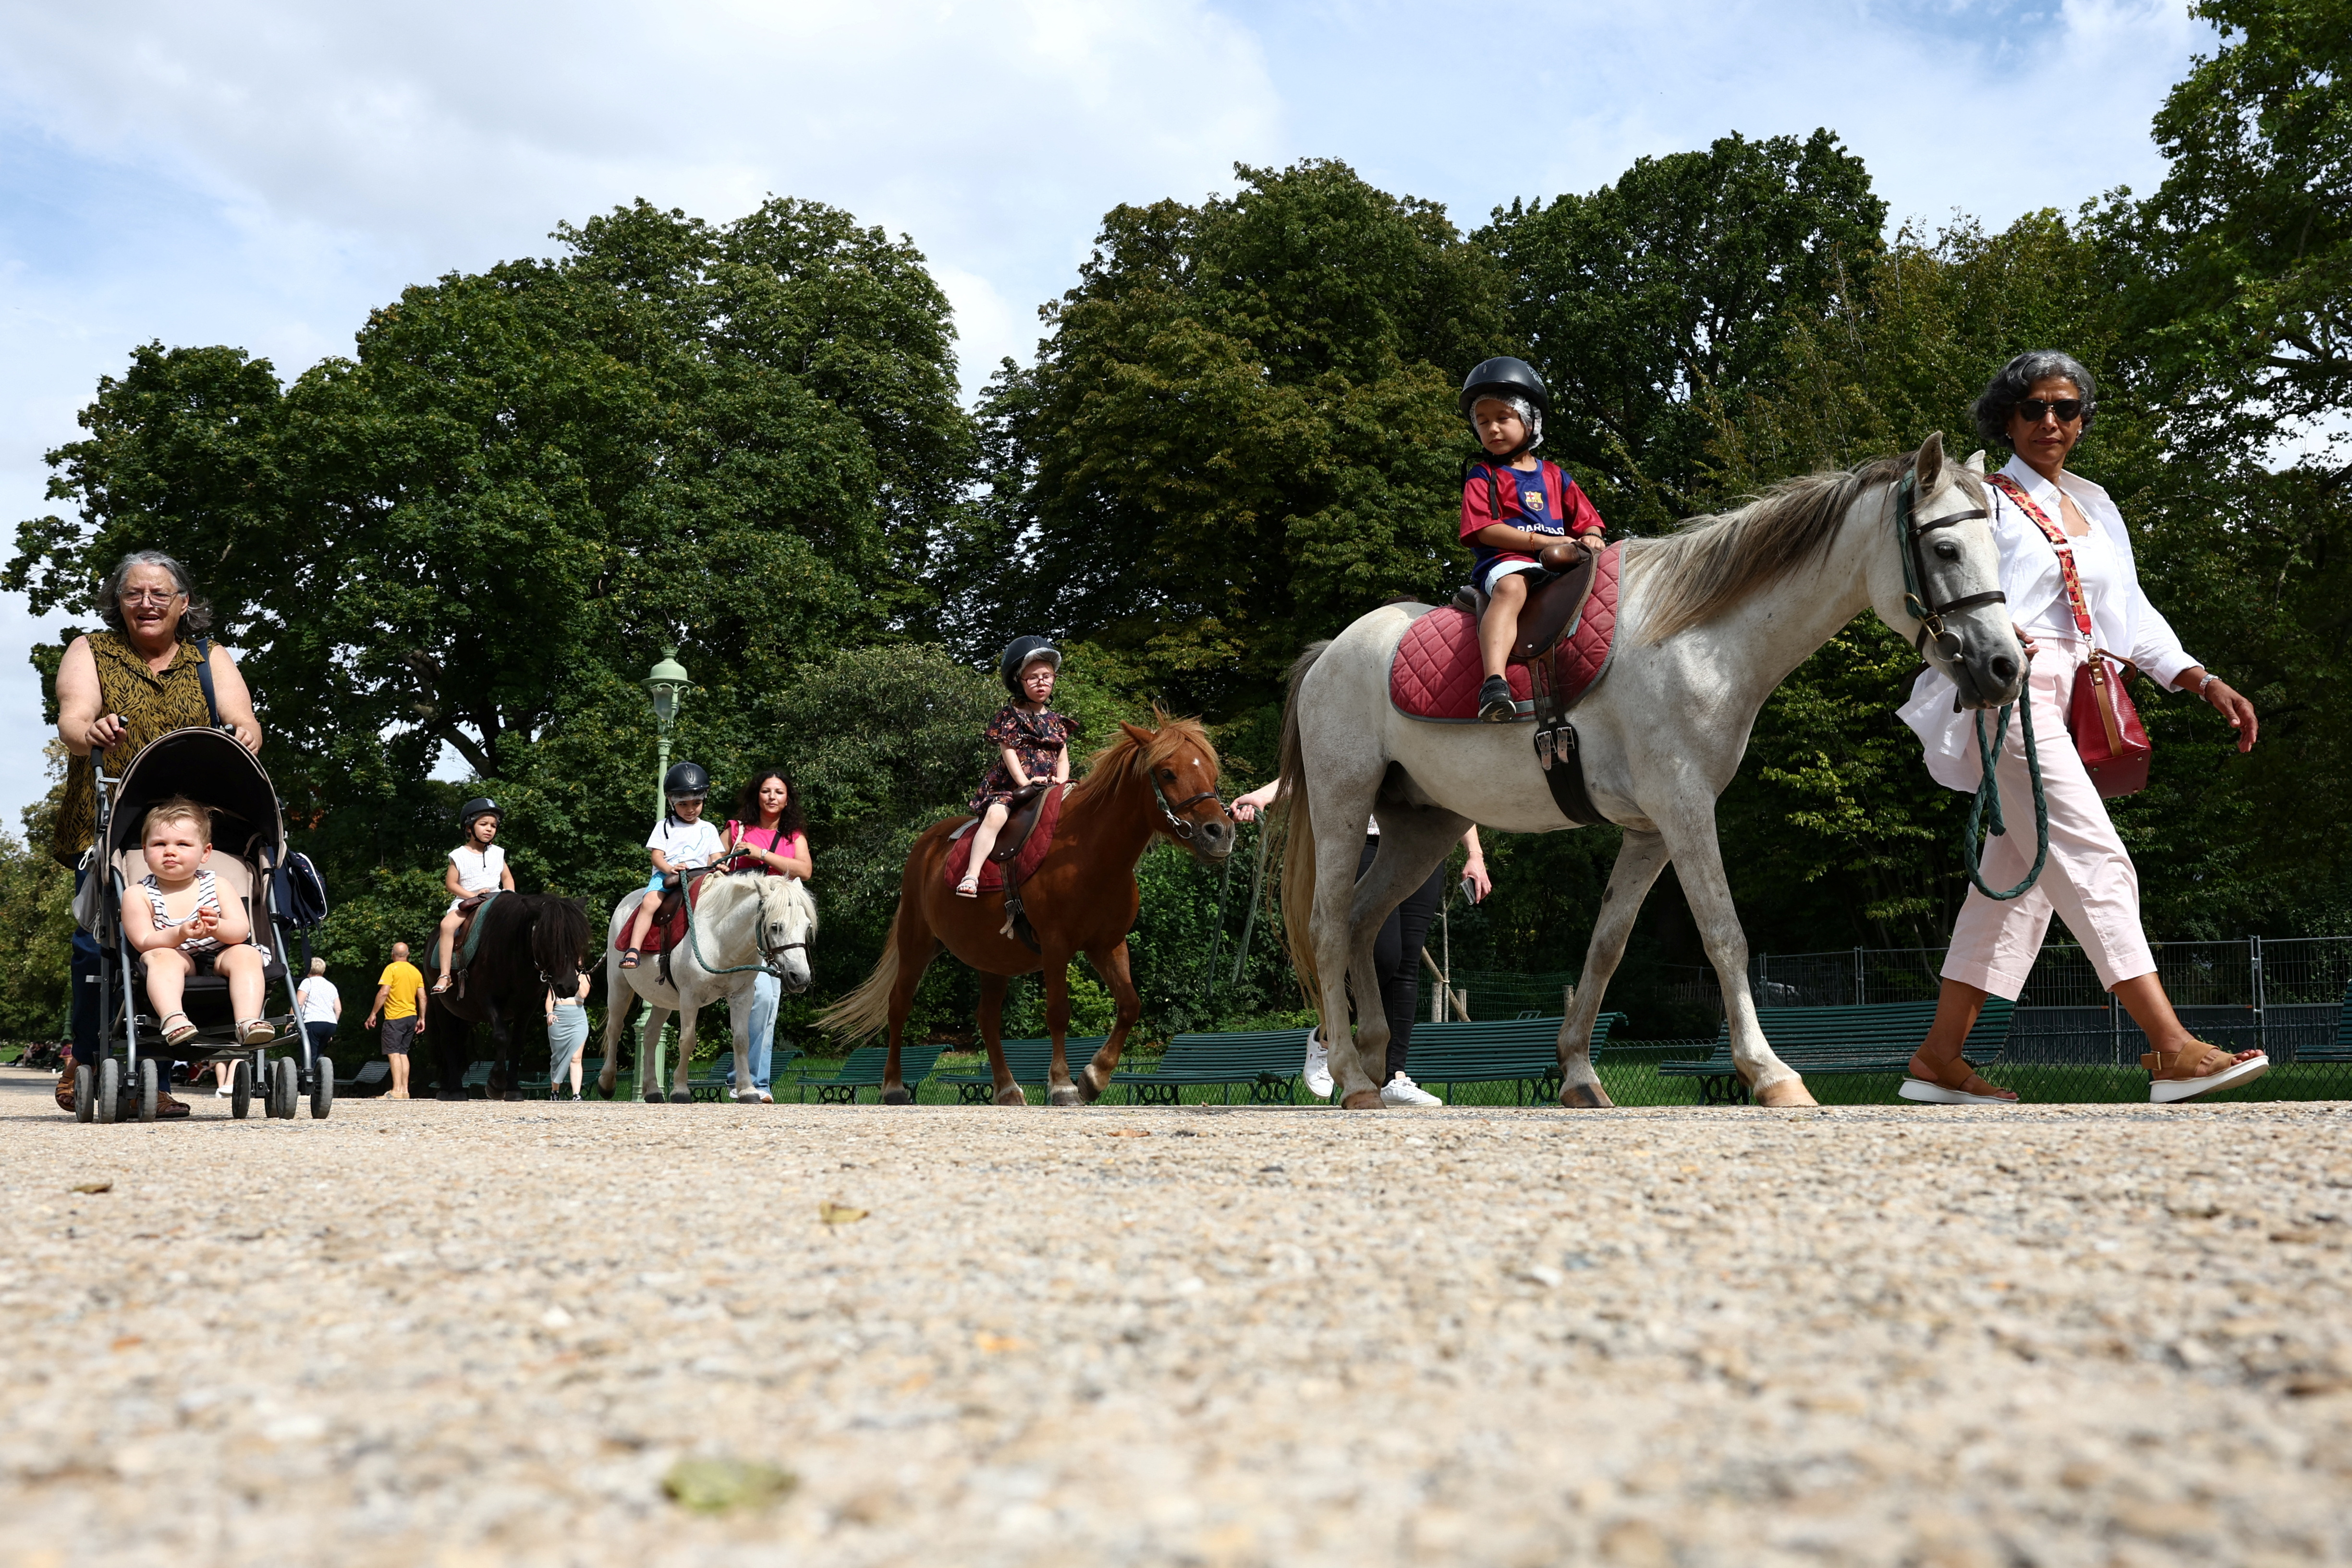 Paris bans pony rides for children in public parks